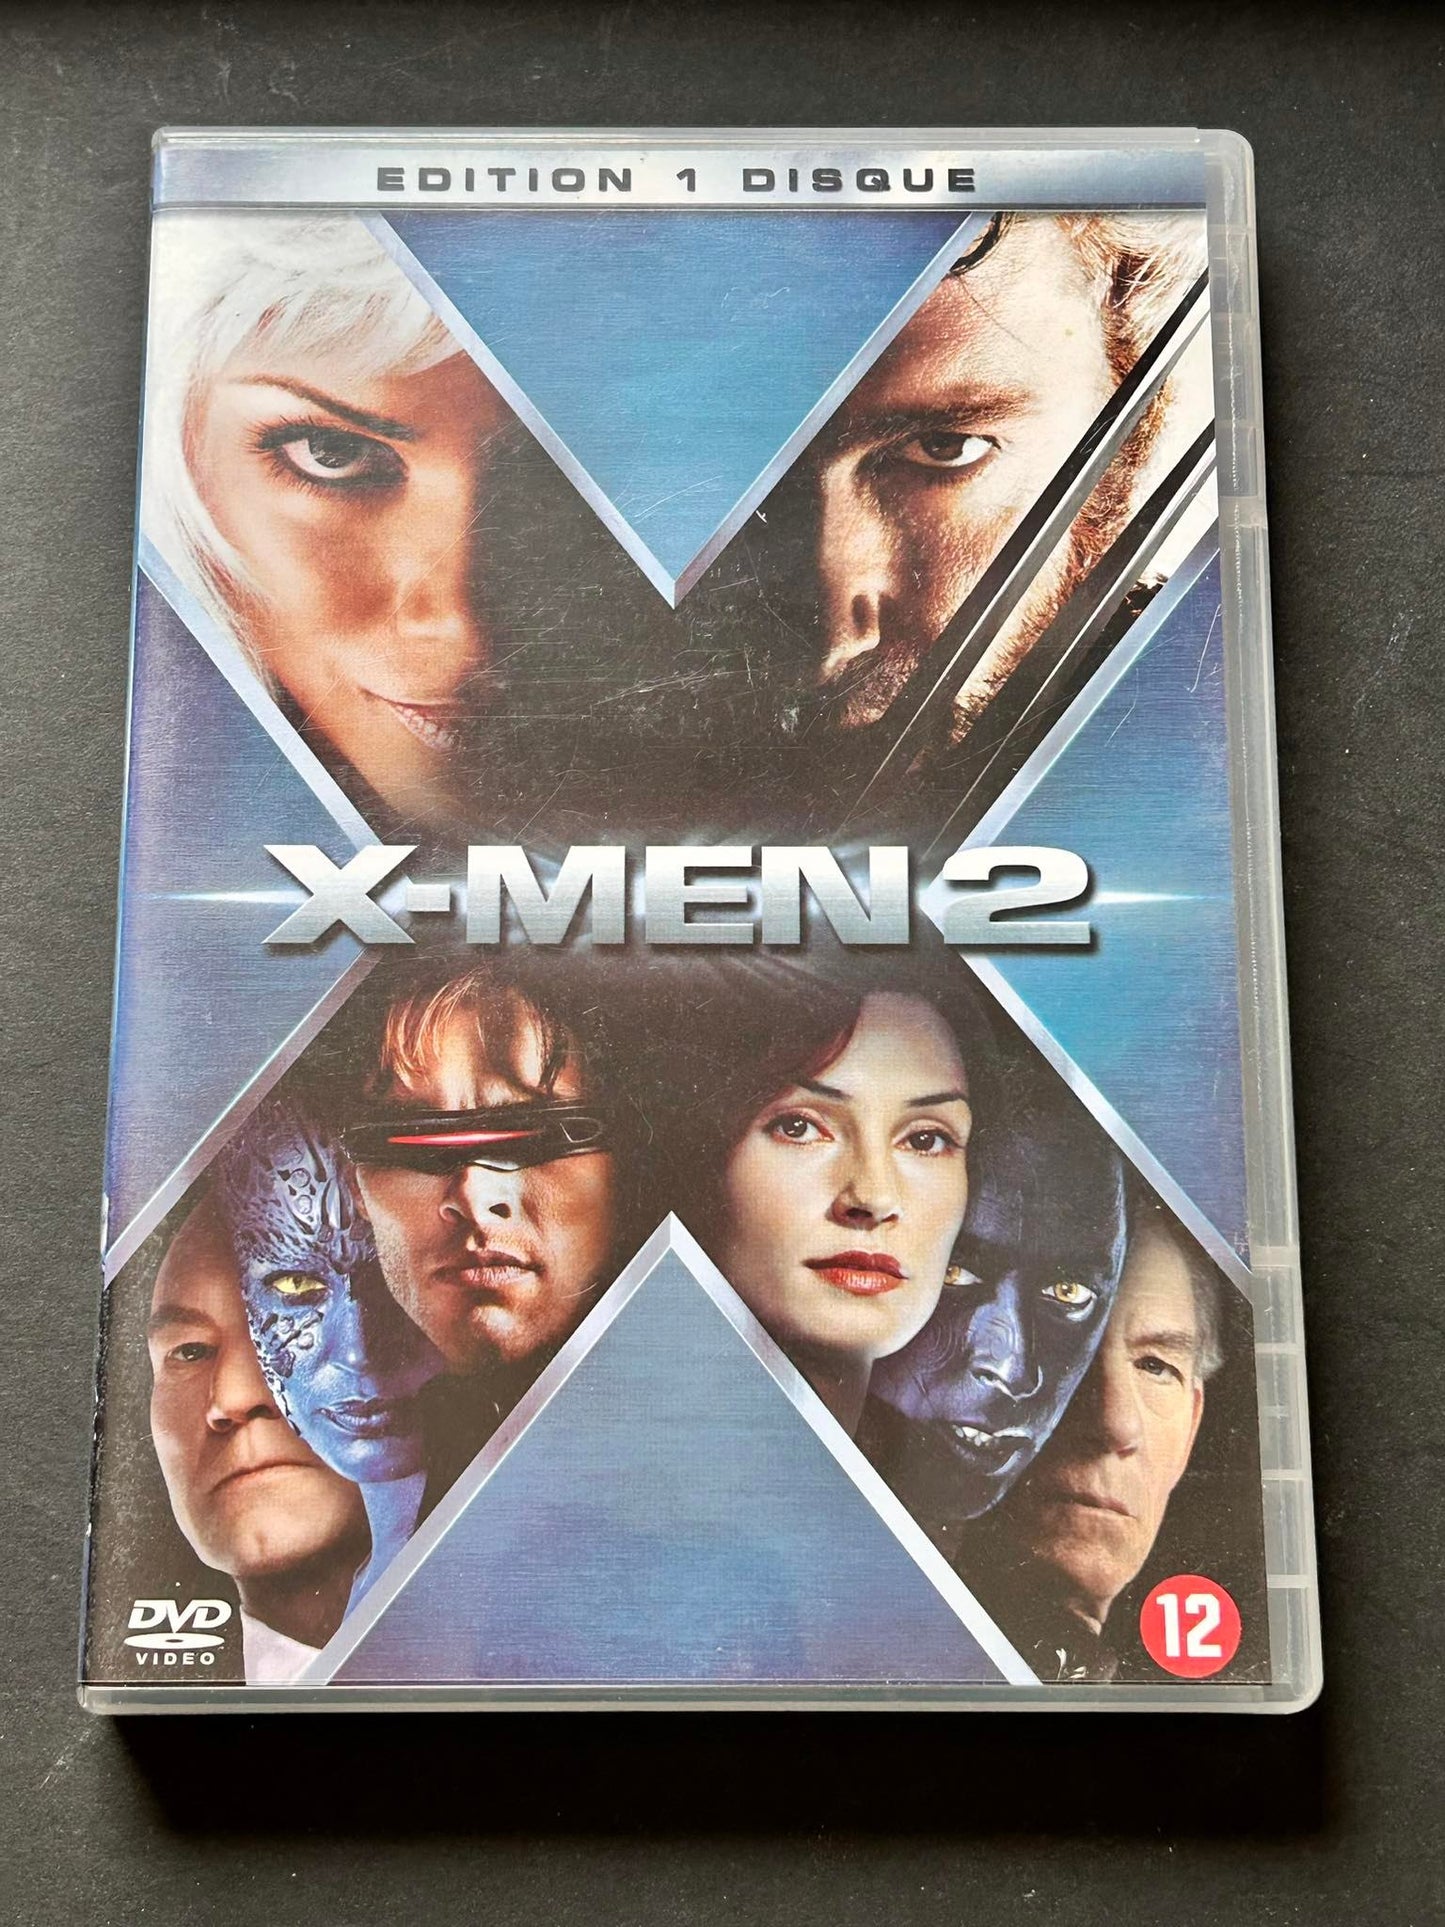 DvD X-Men 2